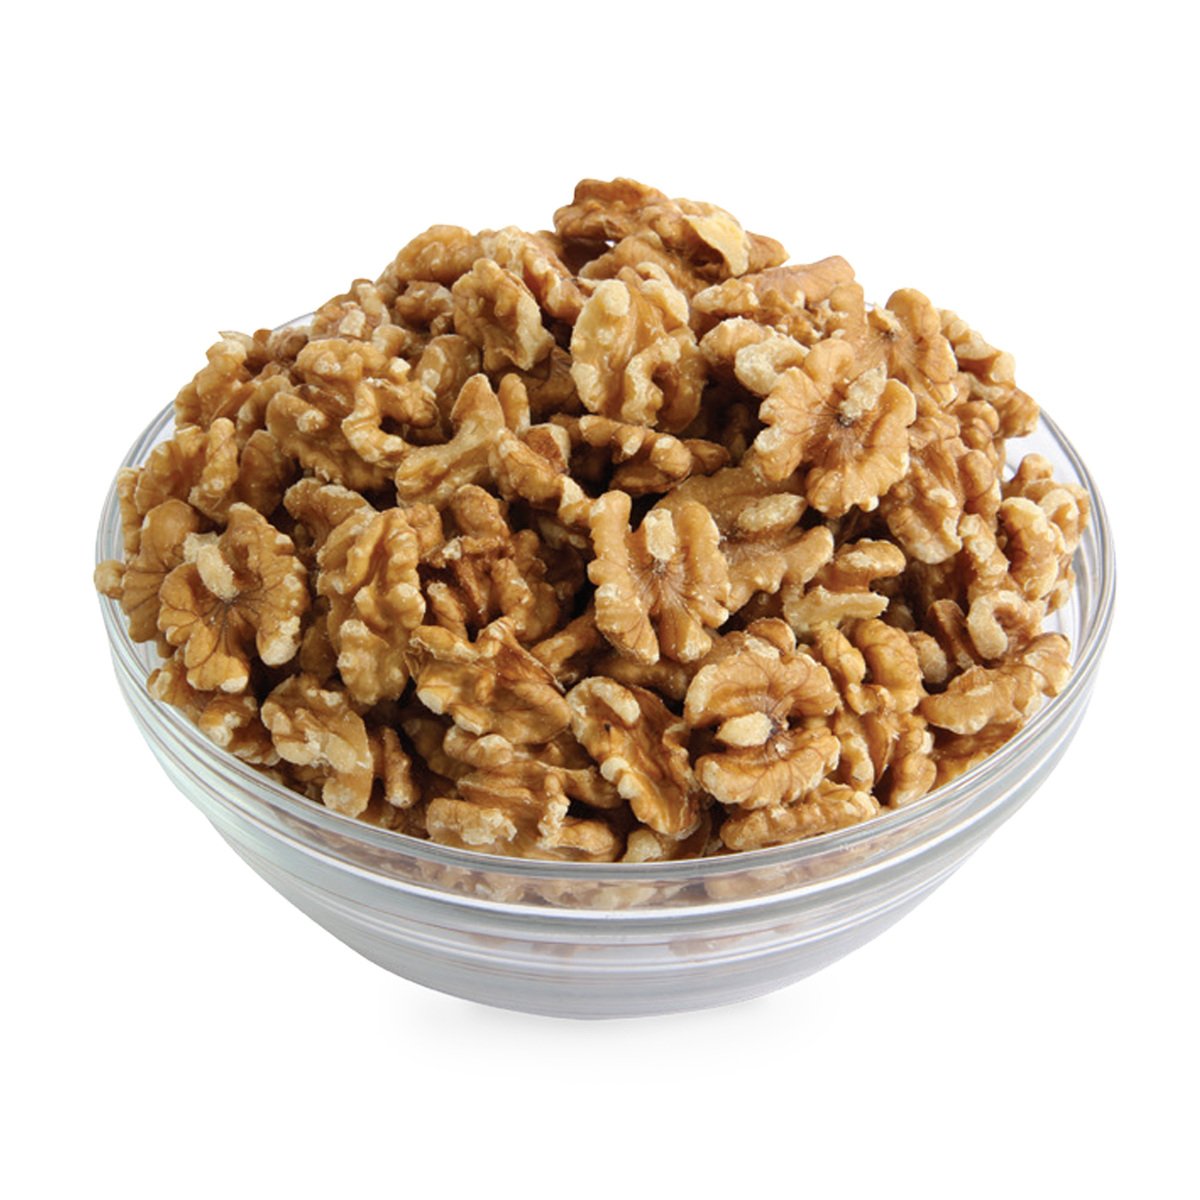 اشتري قم بشراء جوز عين الجمل امريكي 500 جم وزن تقريبي Online at Best Price من الموقع - من لولو هايبر ماركت Roastery Nuts في السعودية